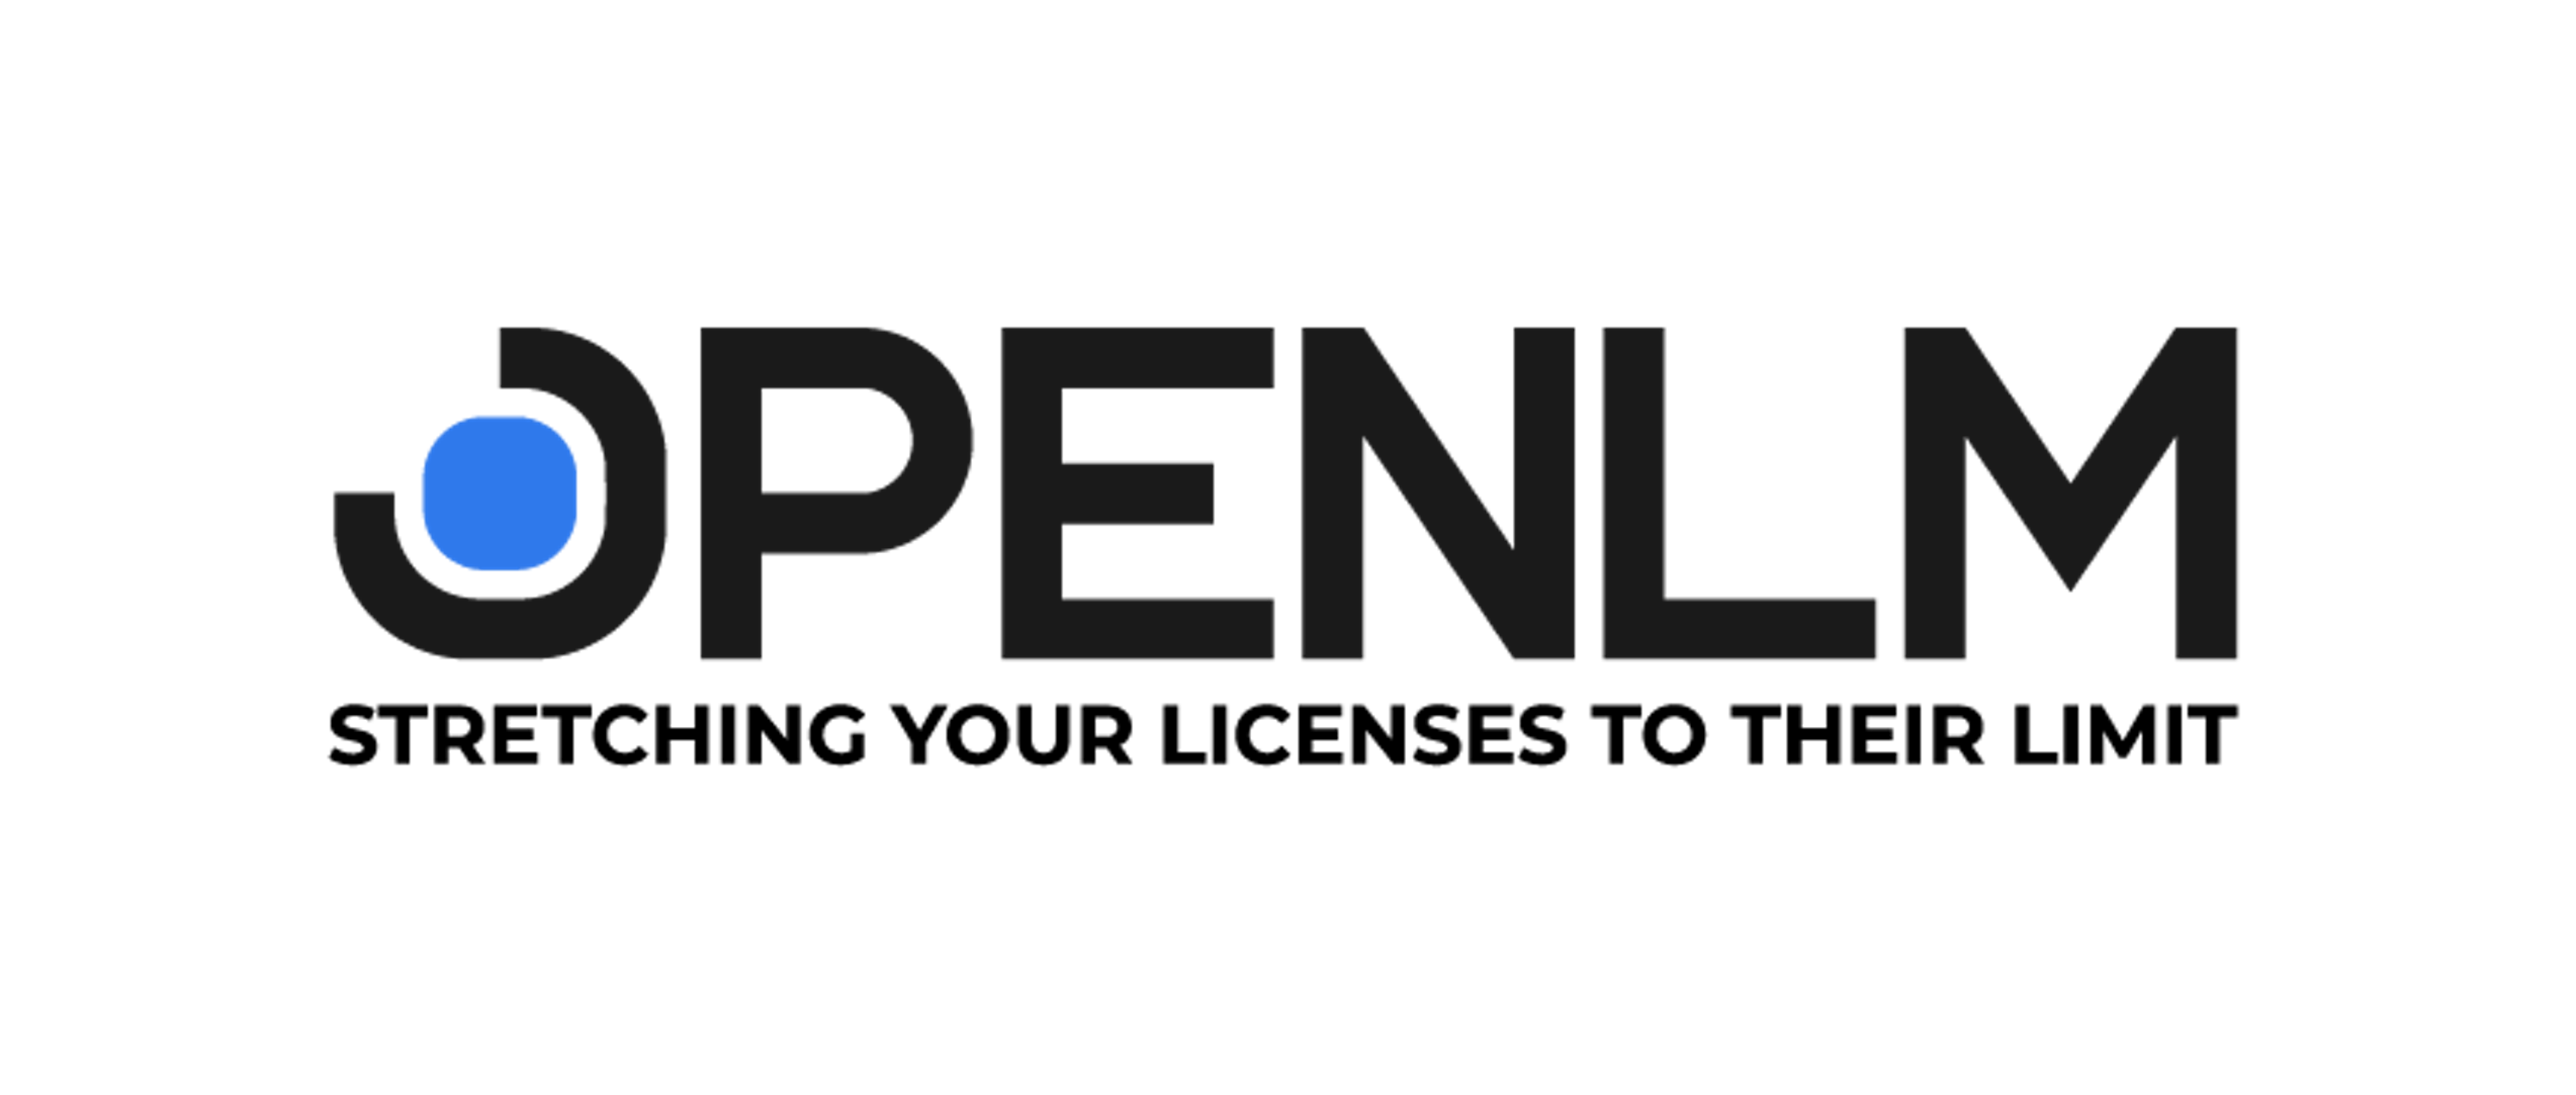 OpenLM Logo